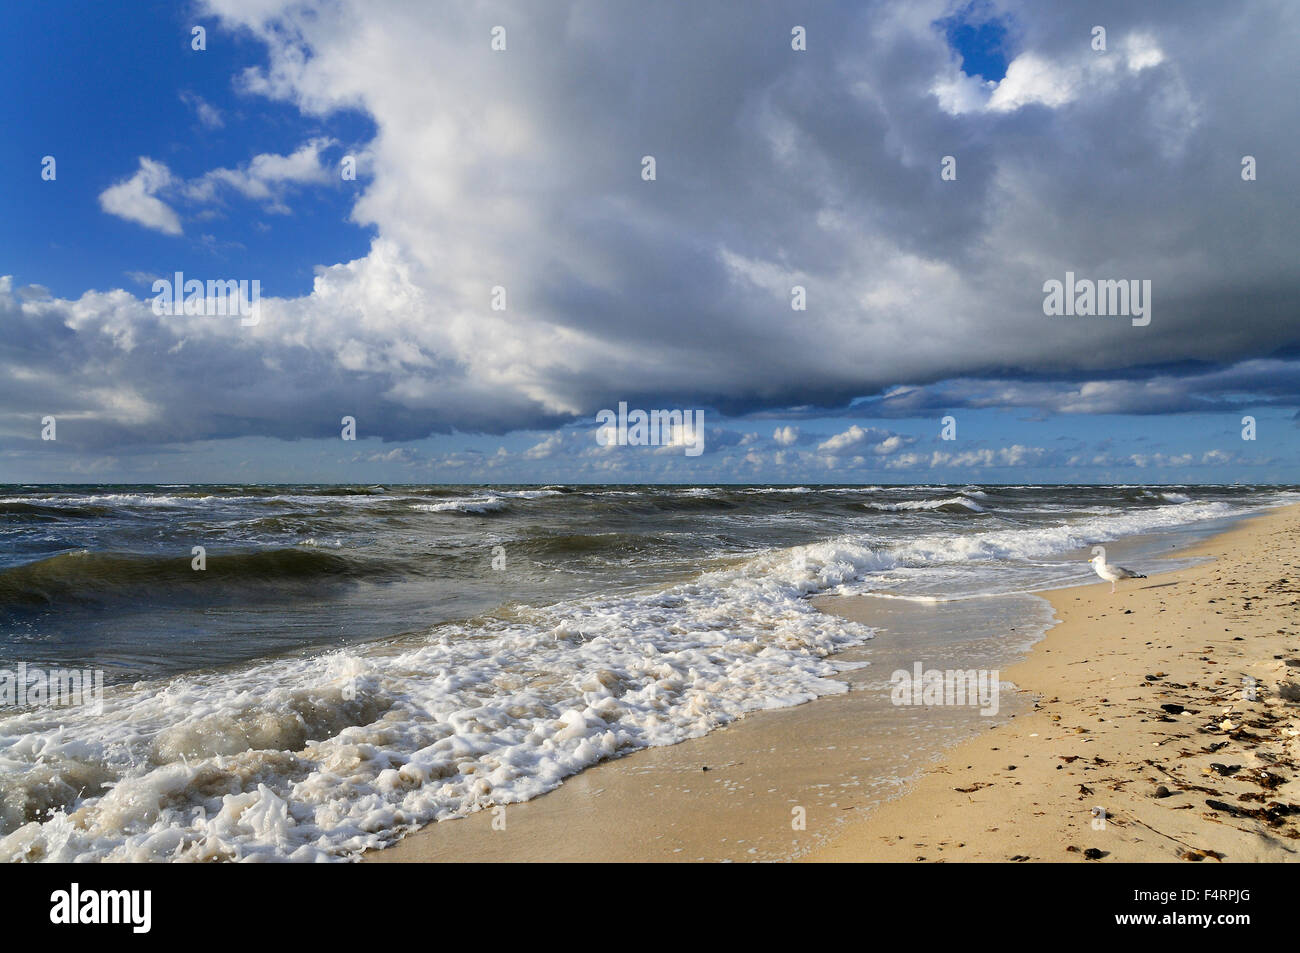 Les nuages bas sur la plage ouest, Darss, Poméranie occidentale Lagoon Salon National Park, Mecklembourg-Poméranie-Occidentale, Allemagne Banque D'Images